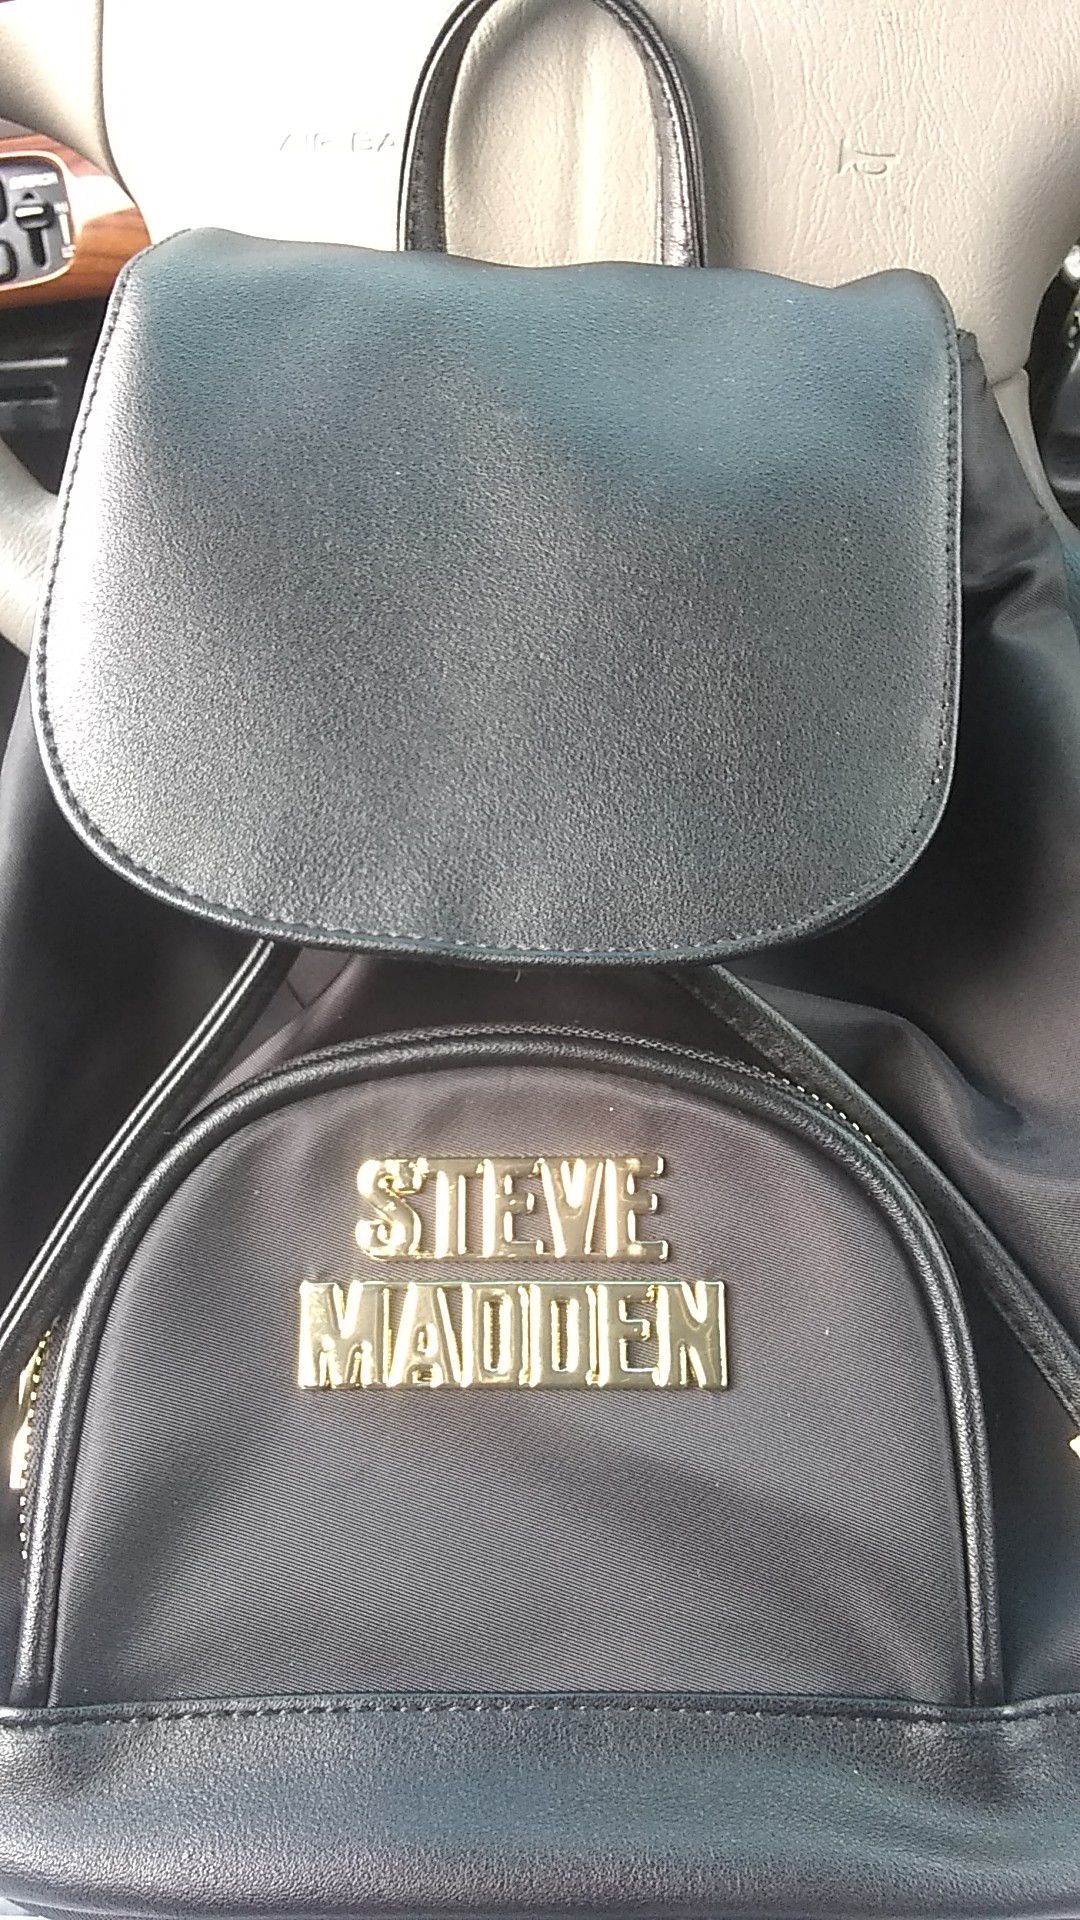 Steve Madden mini backpack